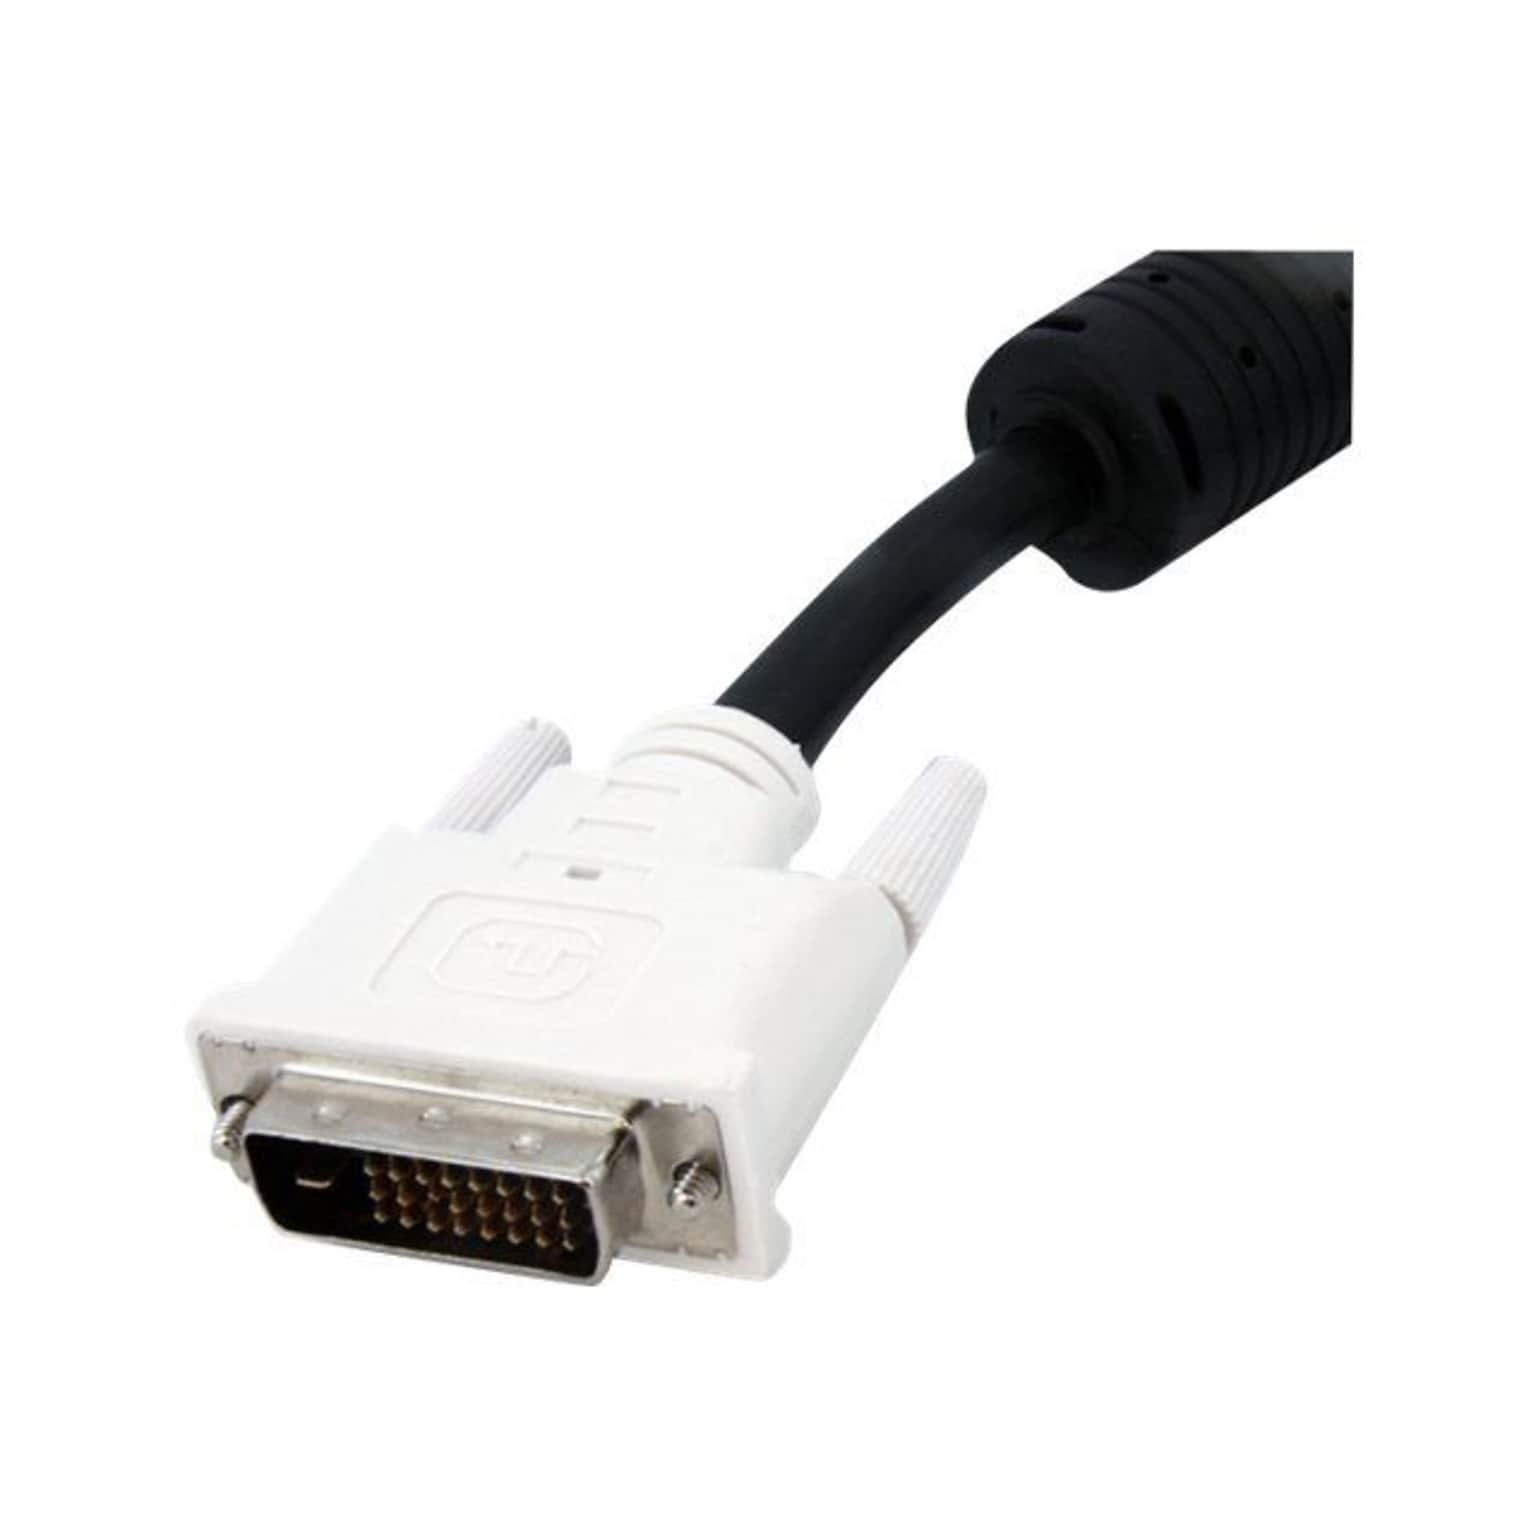 StarTech DVIDDMM10 10 DVI-D to DVI-D Dual-Link Cable, Black1